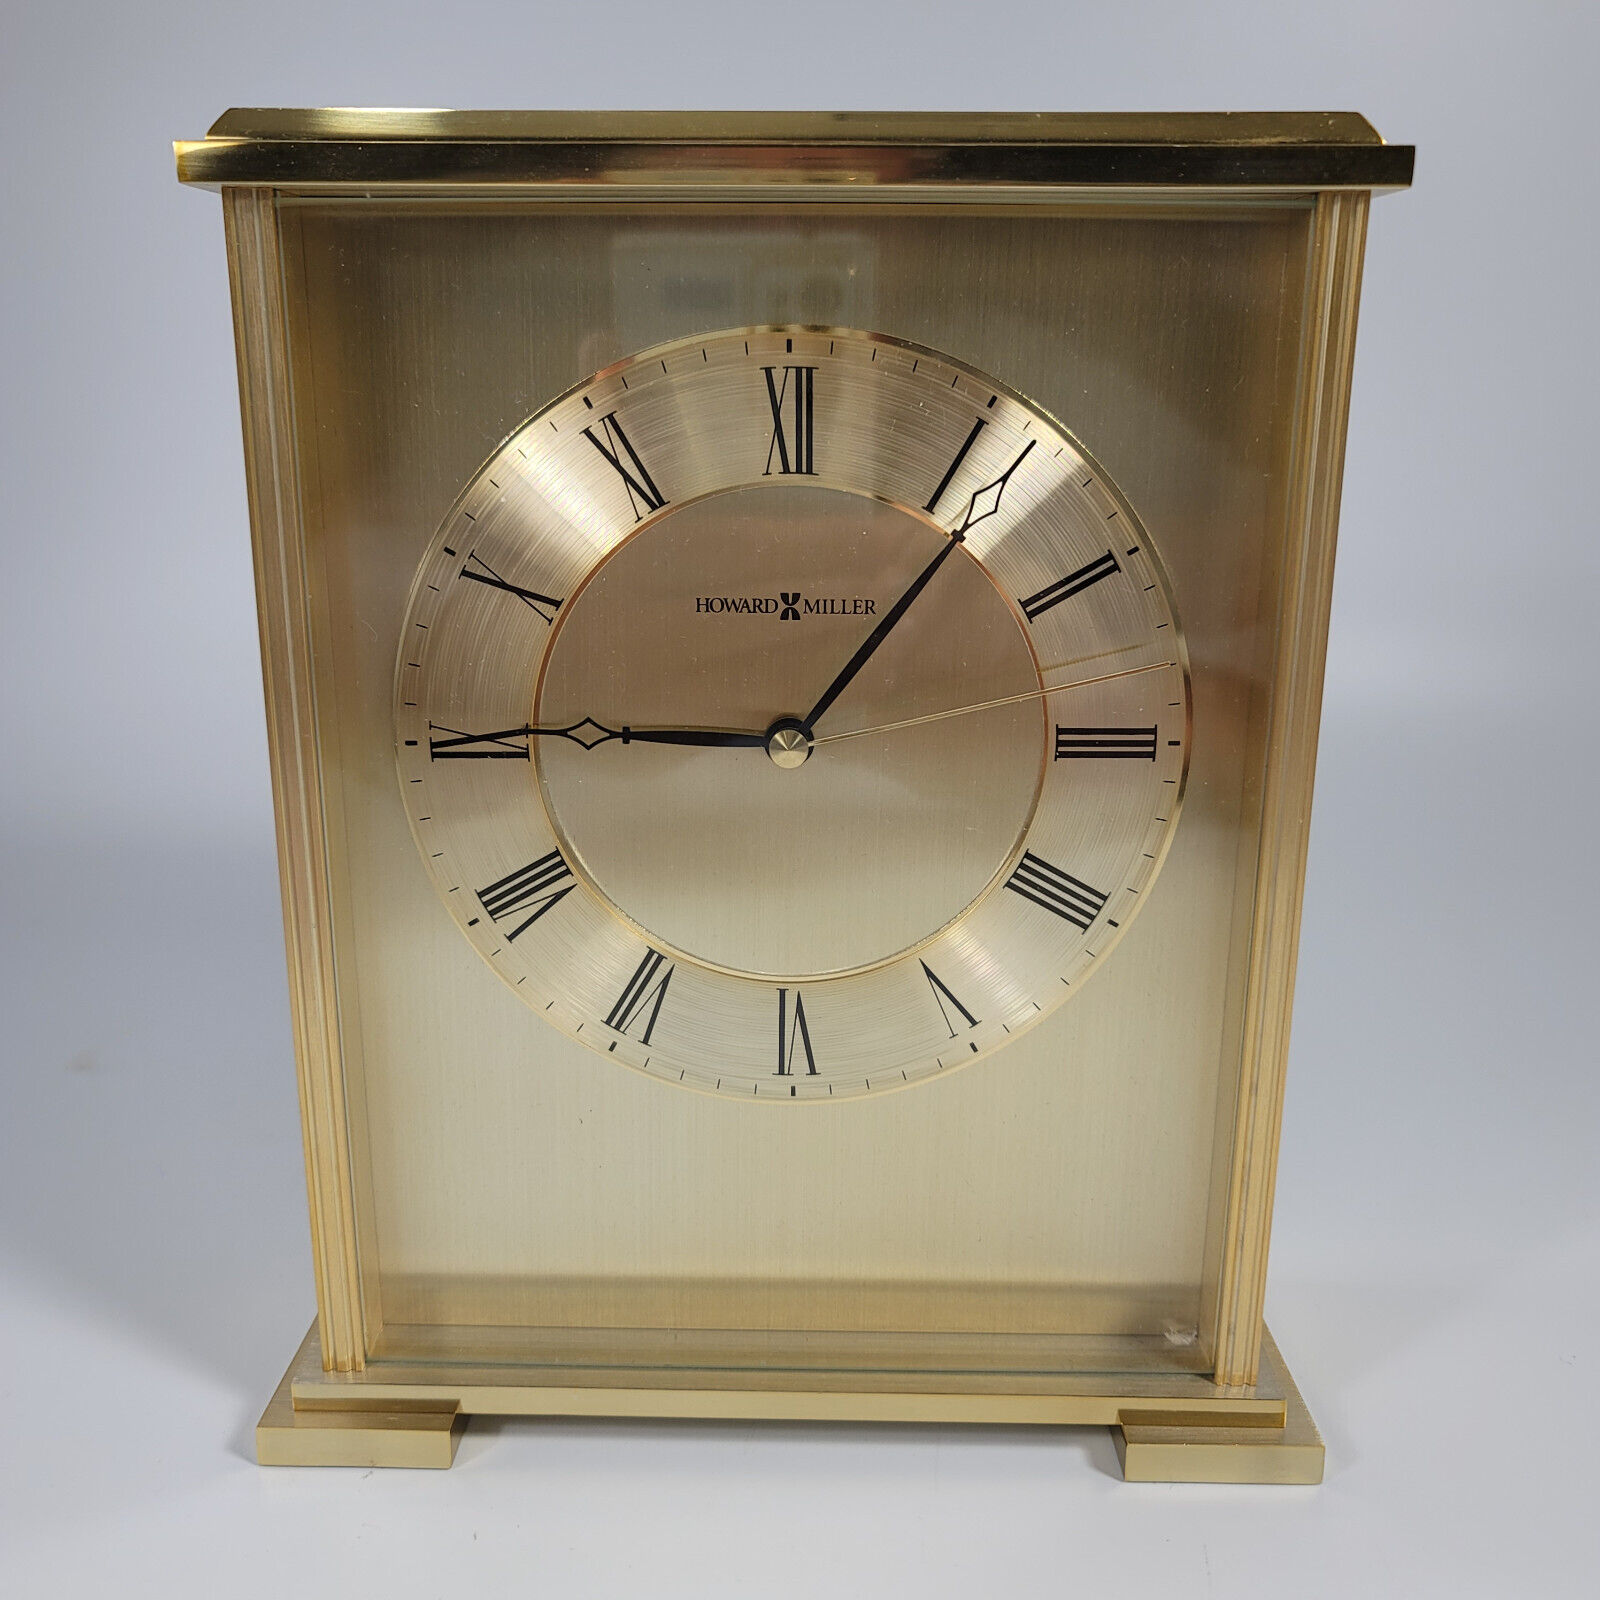 Howard Miller Exton 645-569 Brass Carriage Desk Mantel Clock Not Working D-274